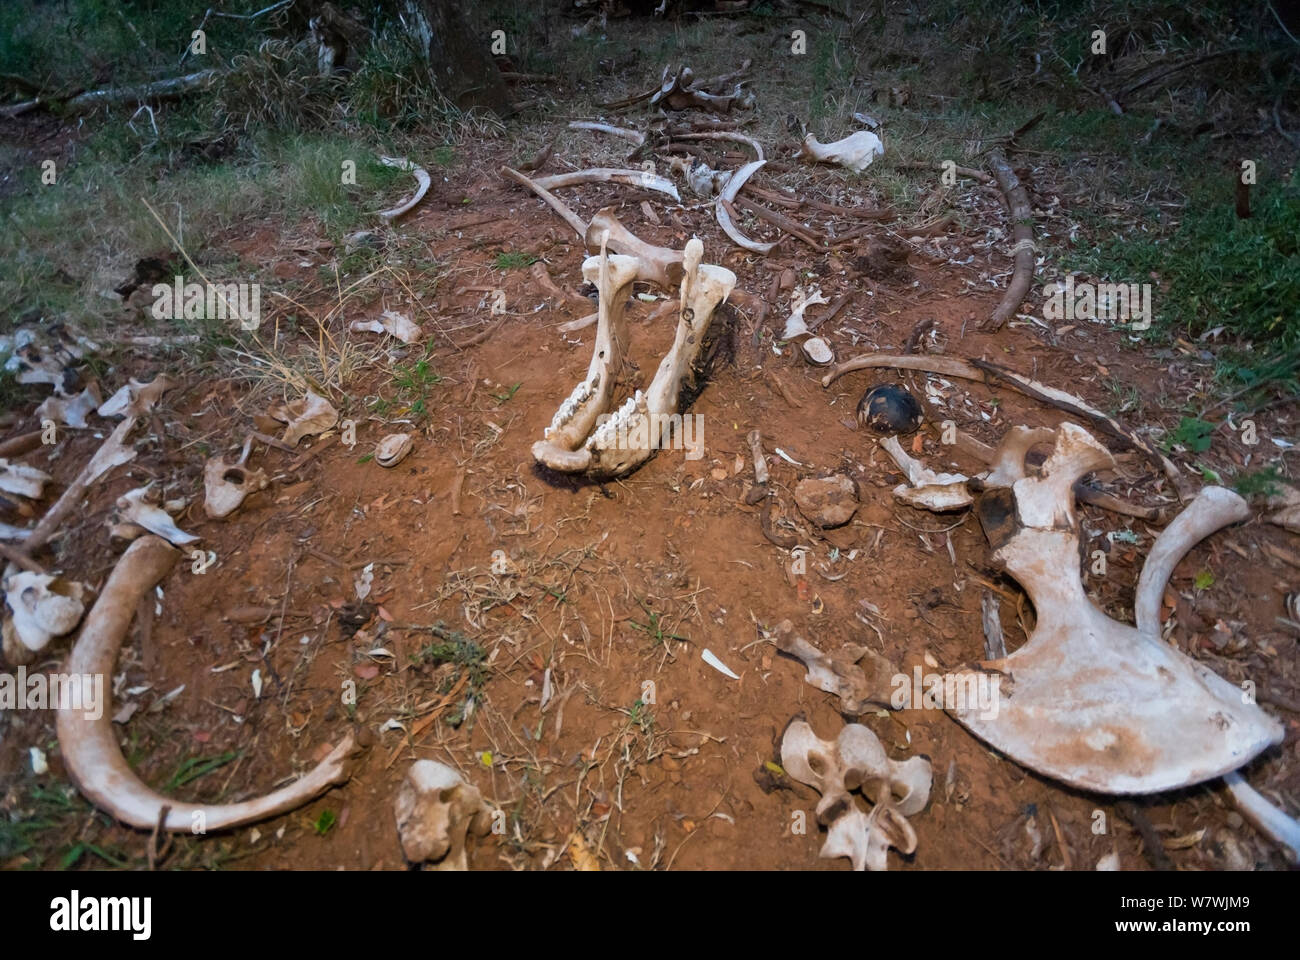 Rinoceronte blanco (Ceratotherium simum) huesos dispersos entre los arbustos, Kariega Game Reserve, provincia de Eastern Cape, Sudáfrica, en septiembre. Foto de stock